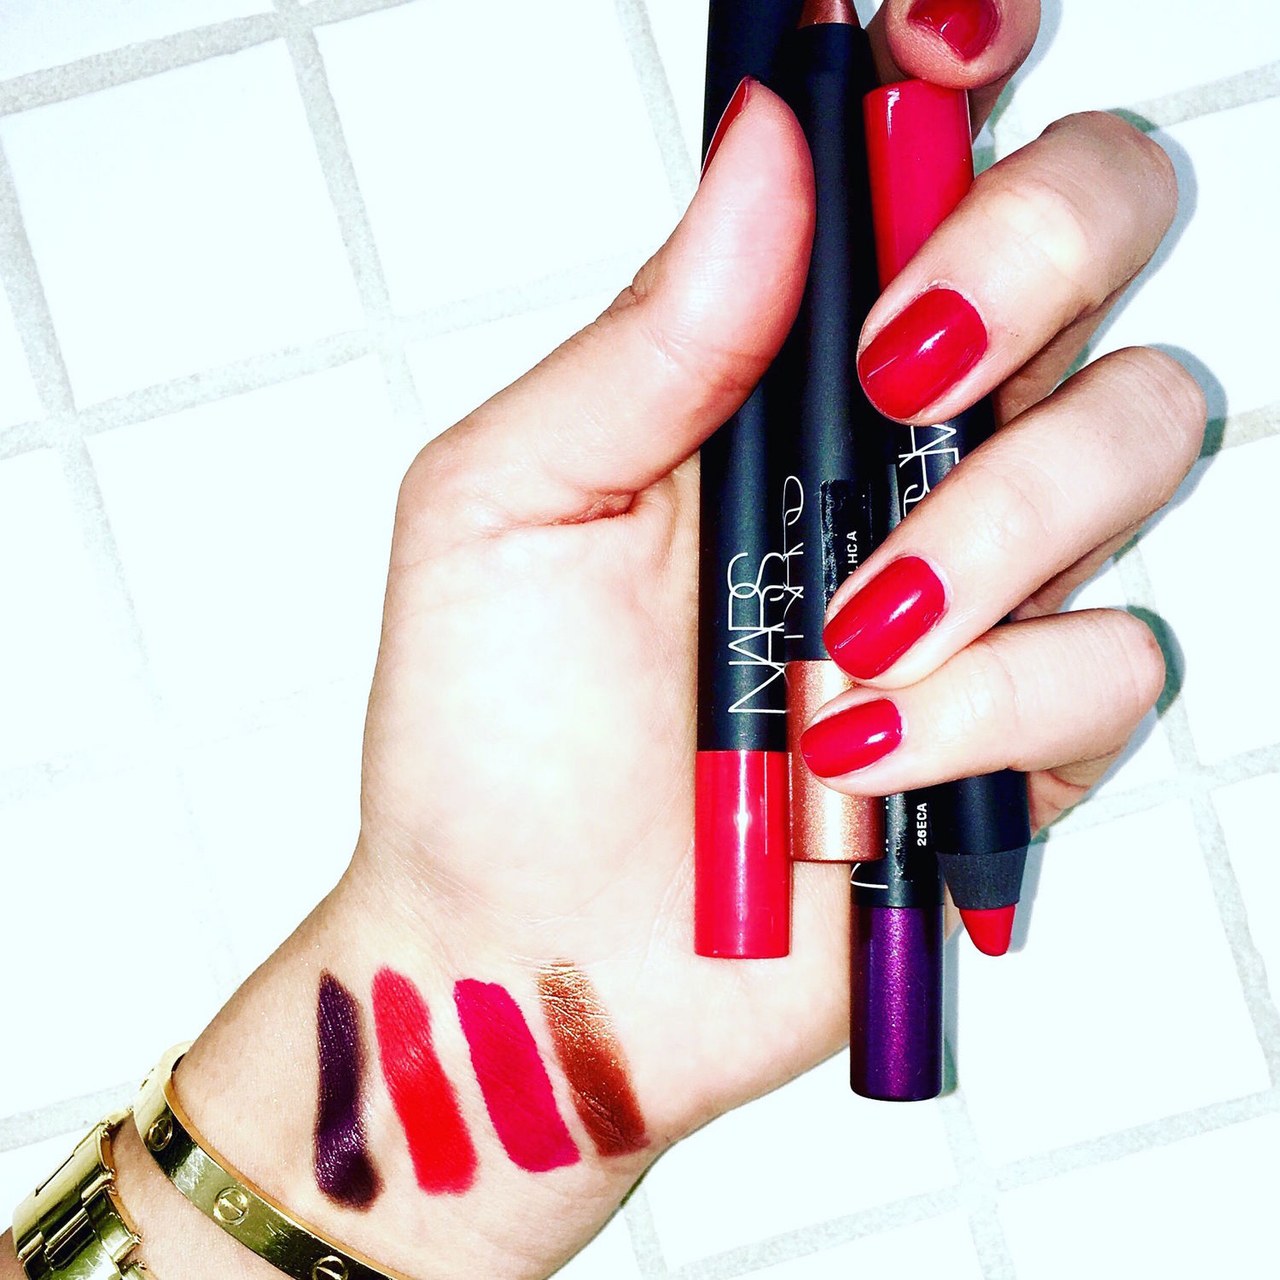 beauty 2016 01 violette red lipstick main - Os Batons Vermelhos que Nossa Beauty Editor Adora